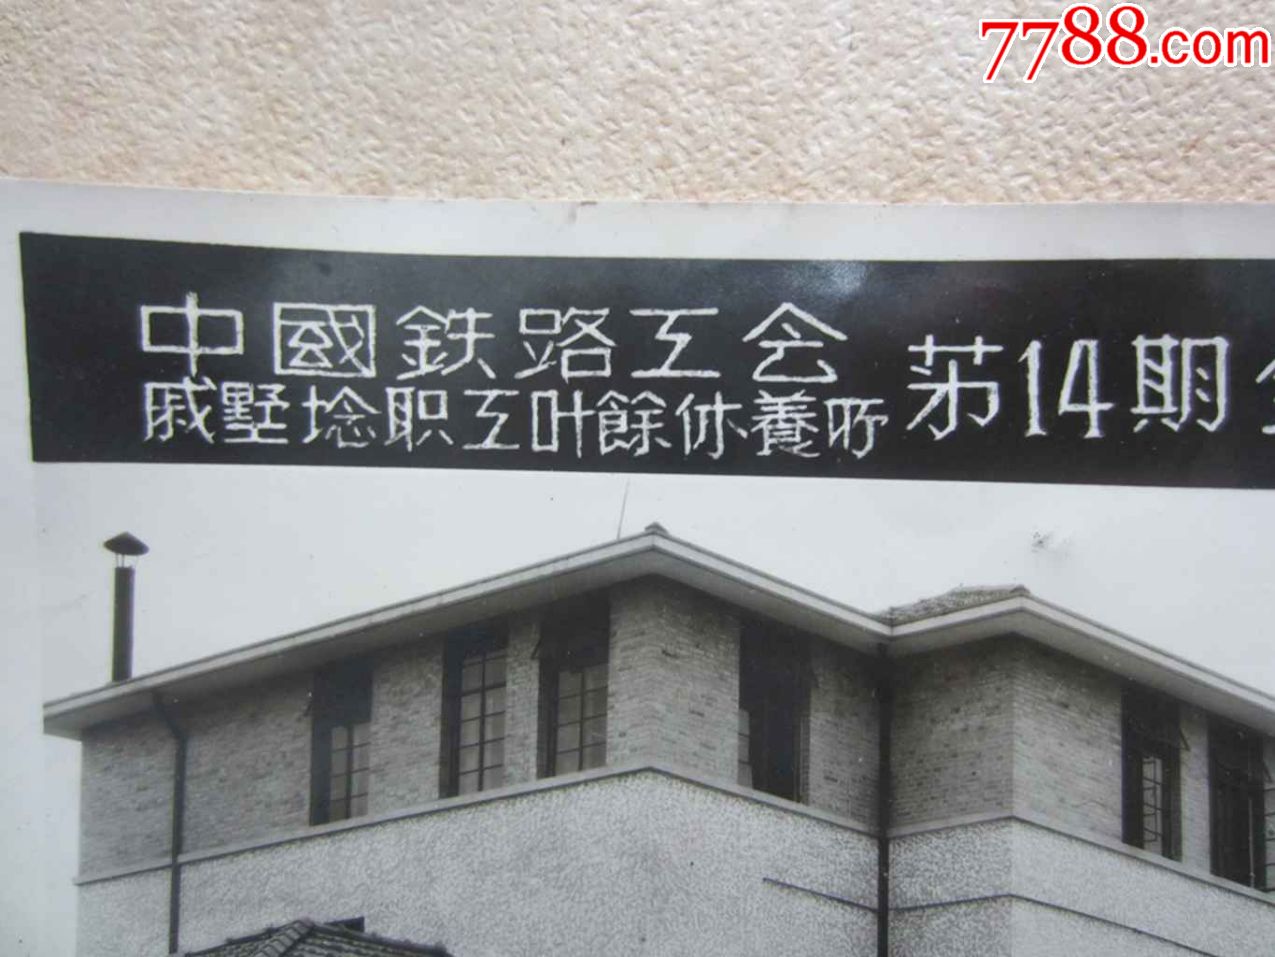 1953年中国铁路工会戚墅堰职工业余休养所第14期全体休养员留念(老